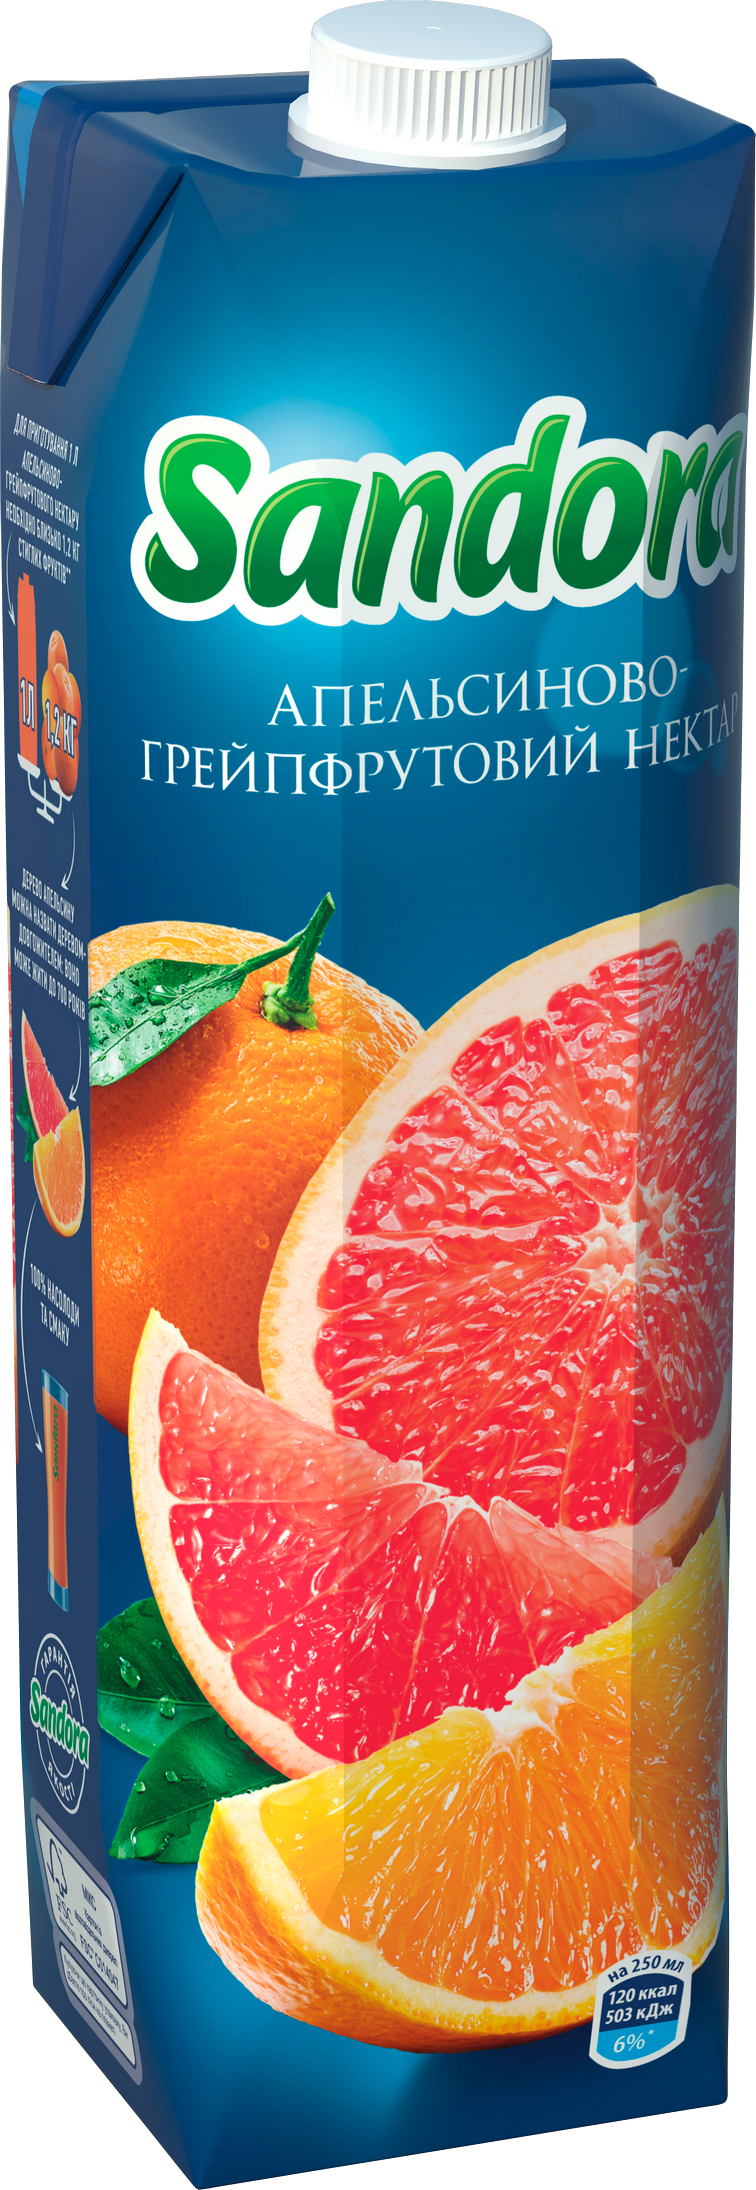 Акция на Упаковка нектара Sandora Апельсиново-грейпфпутовый 0.95 л х 10 шт (4823063112949) от Rozetka UA